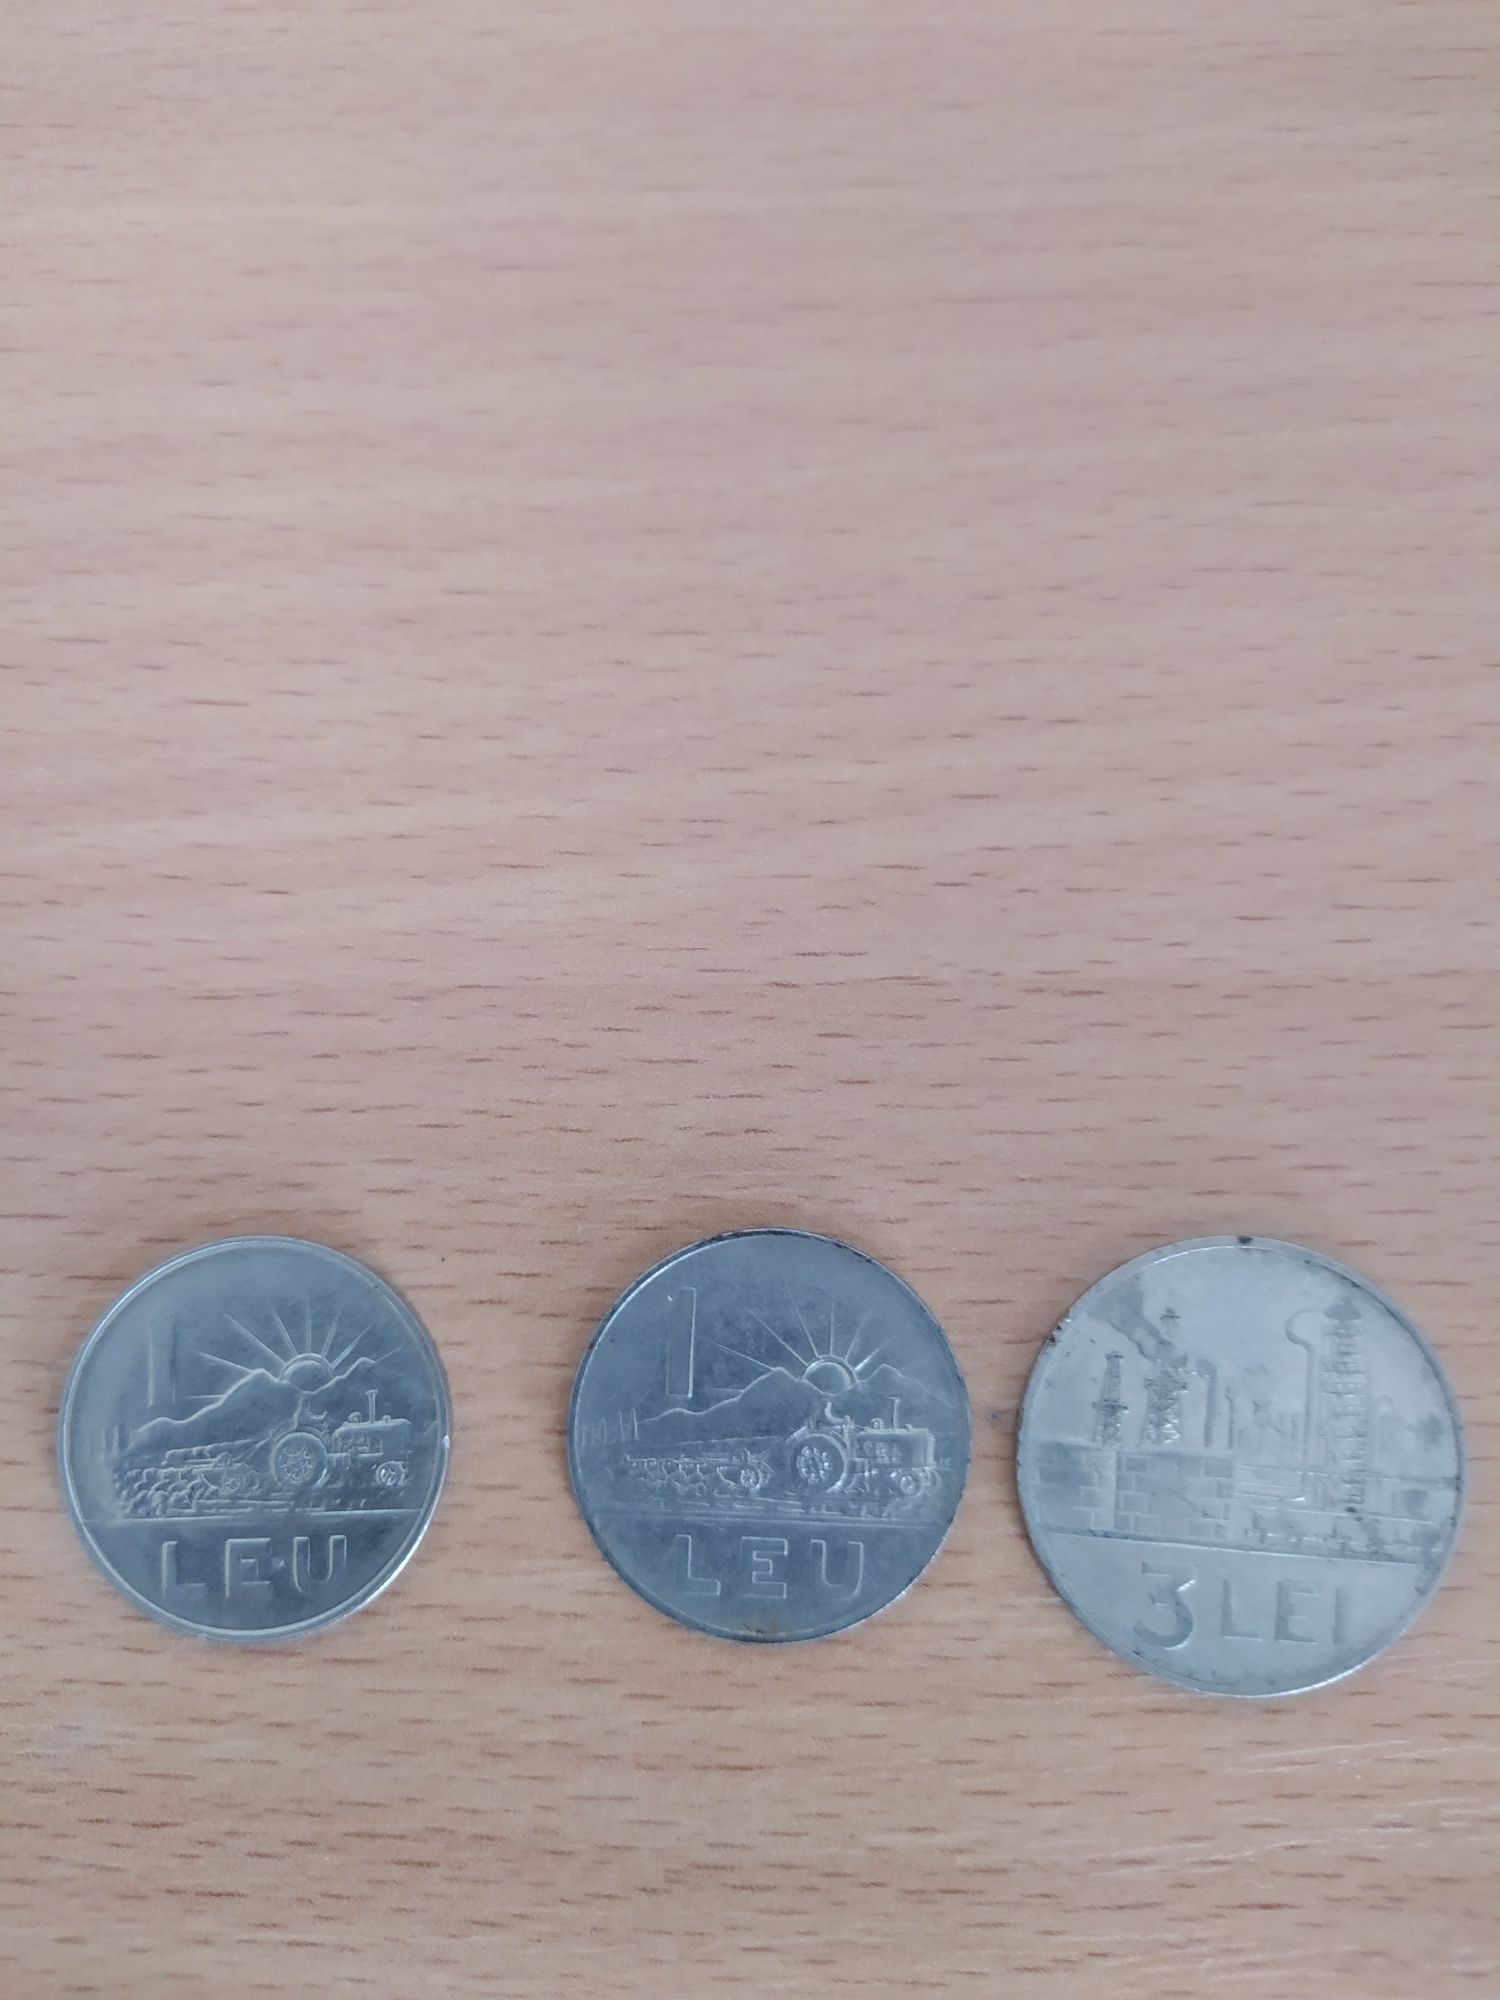 3 monede : 2 de 1 leu si 1 de 3 lei 1966,1963